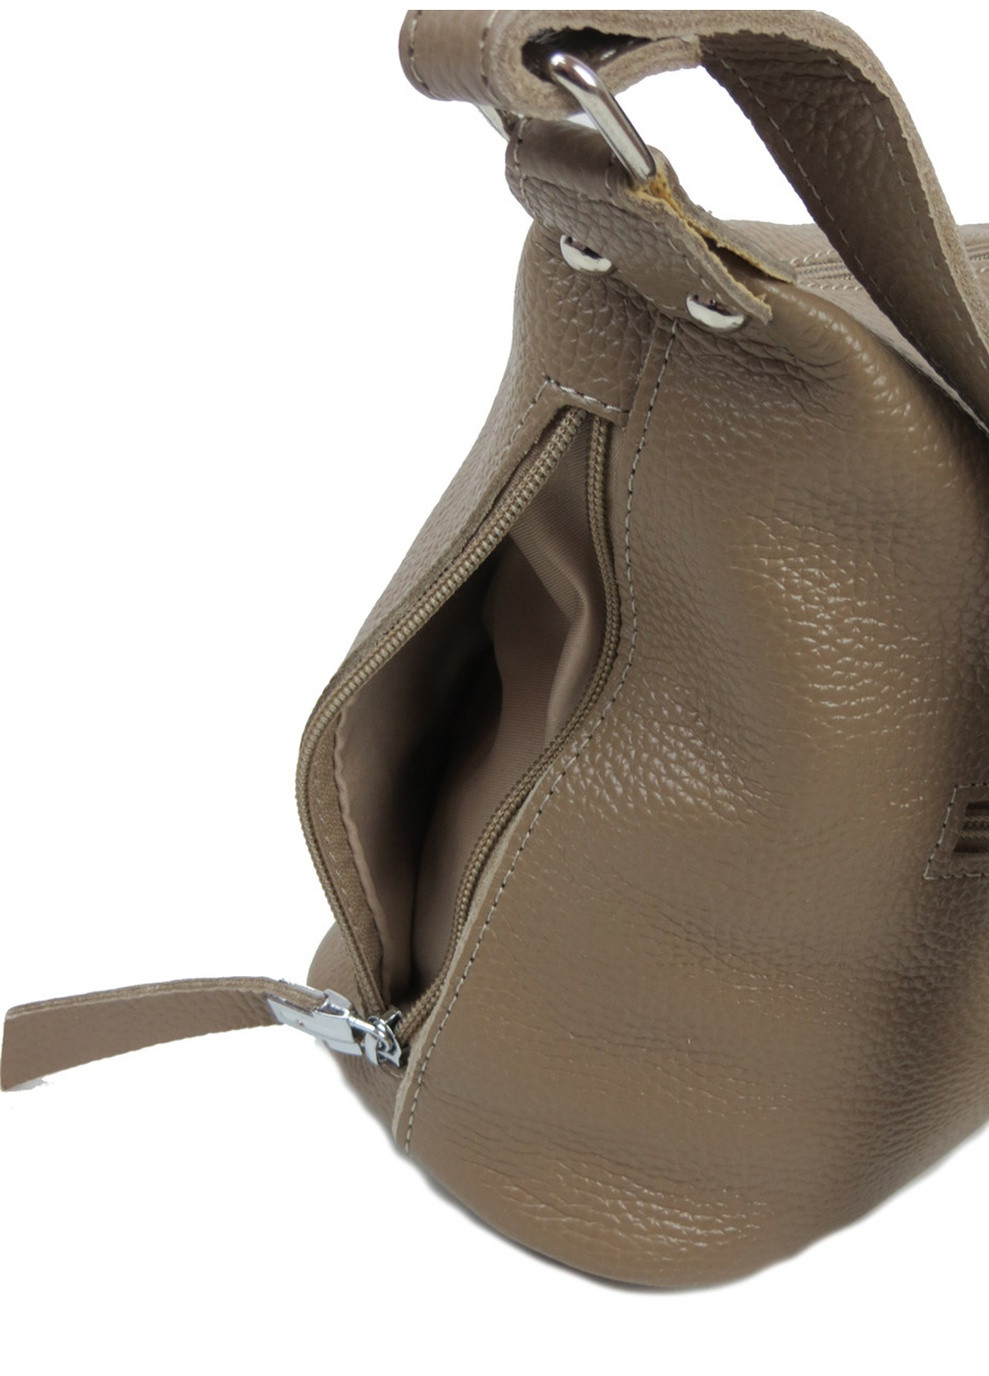 Женская кожаная сумка 26х22х8 см Wallaby (250096852)